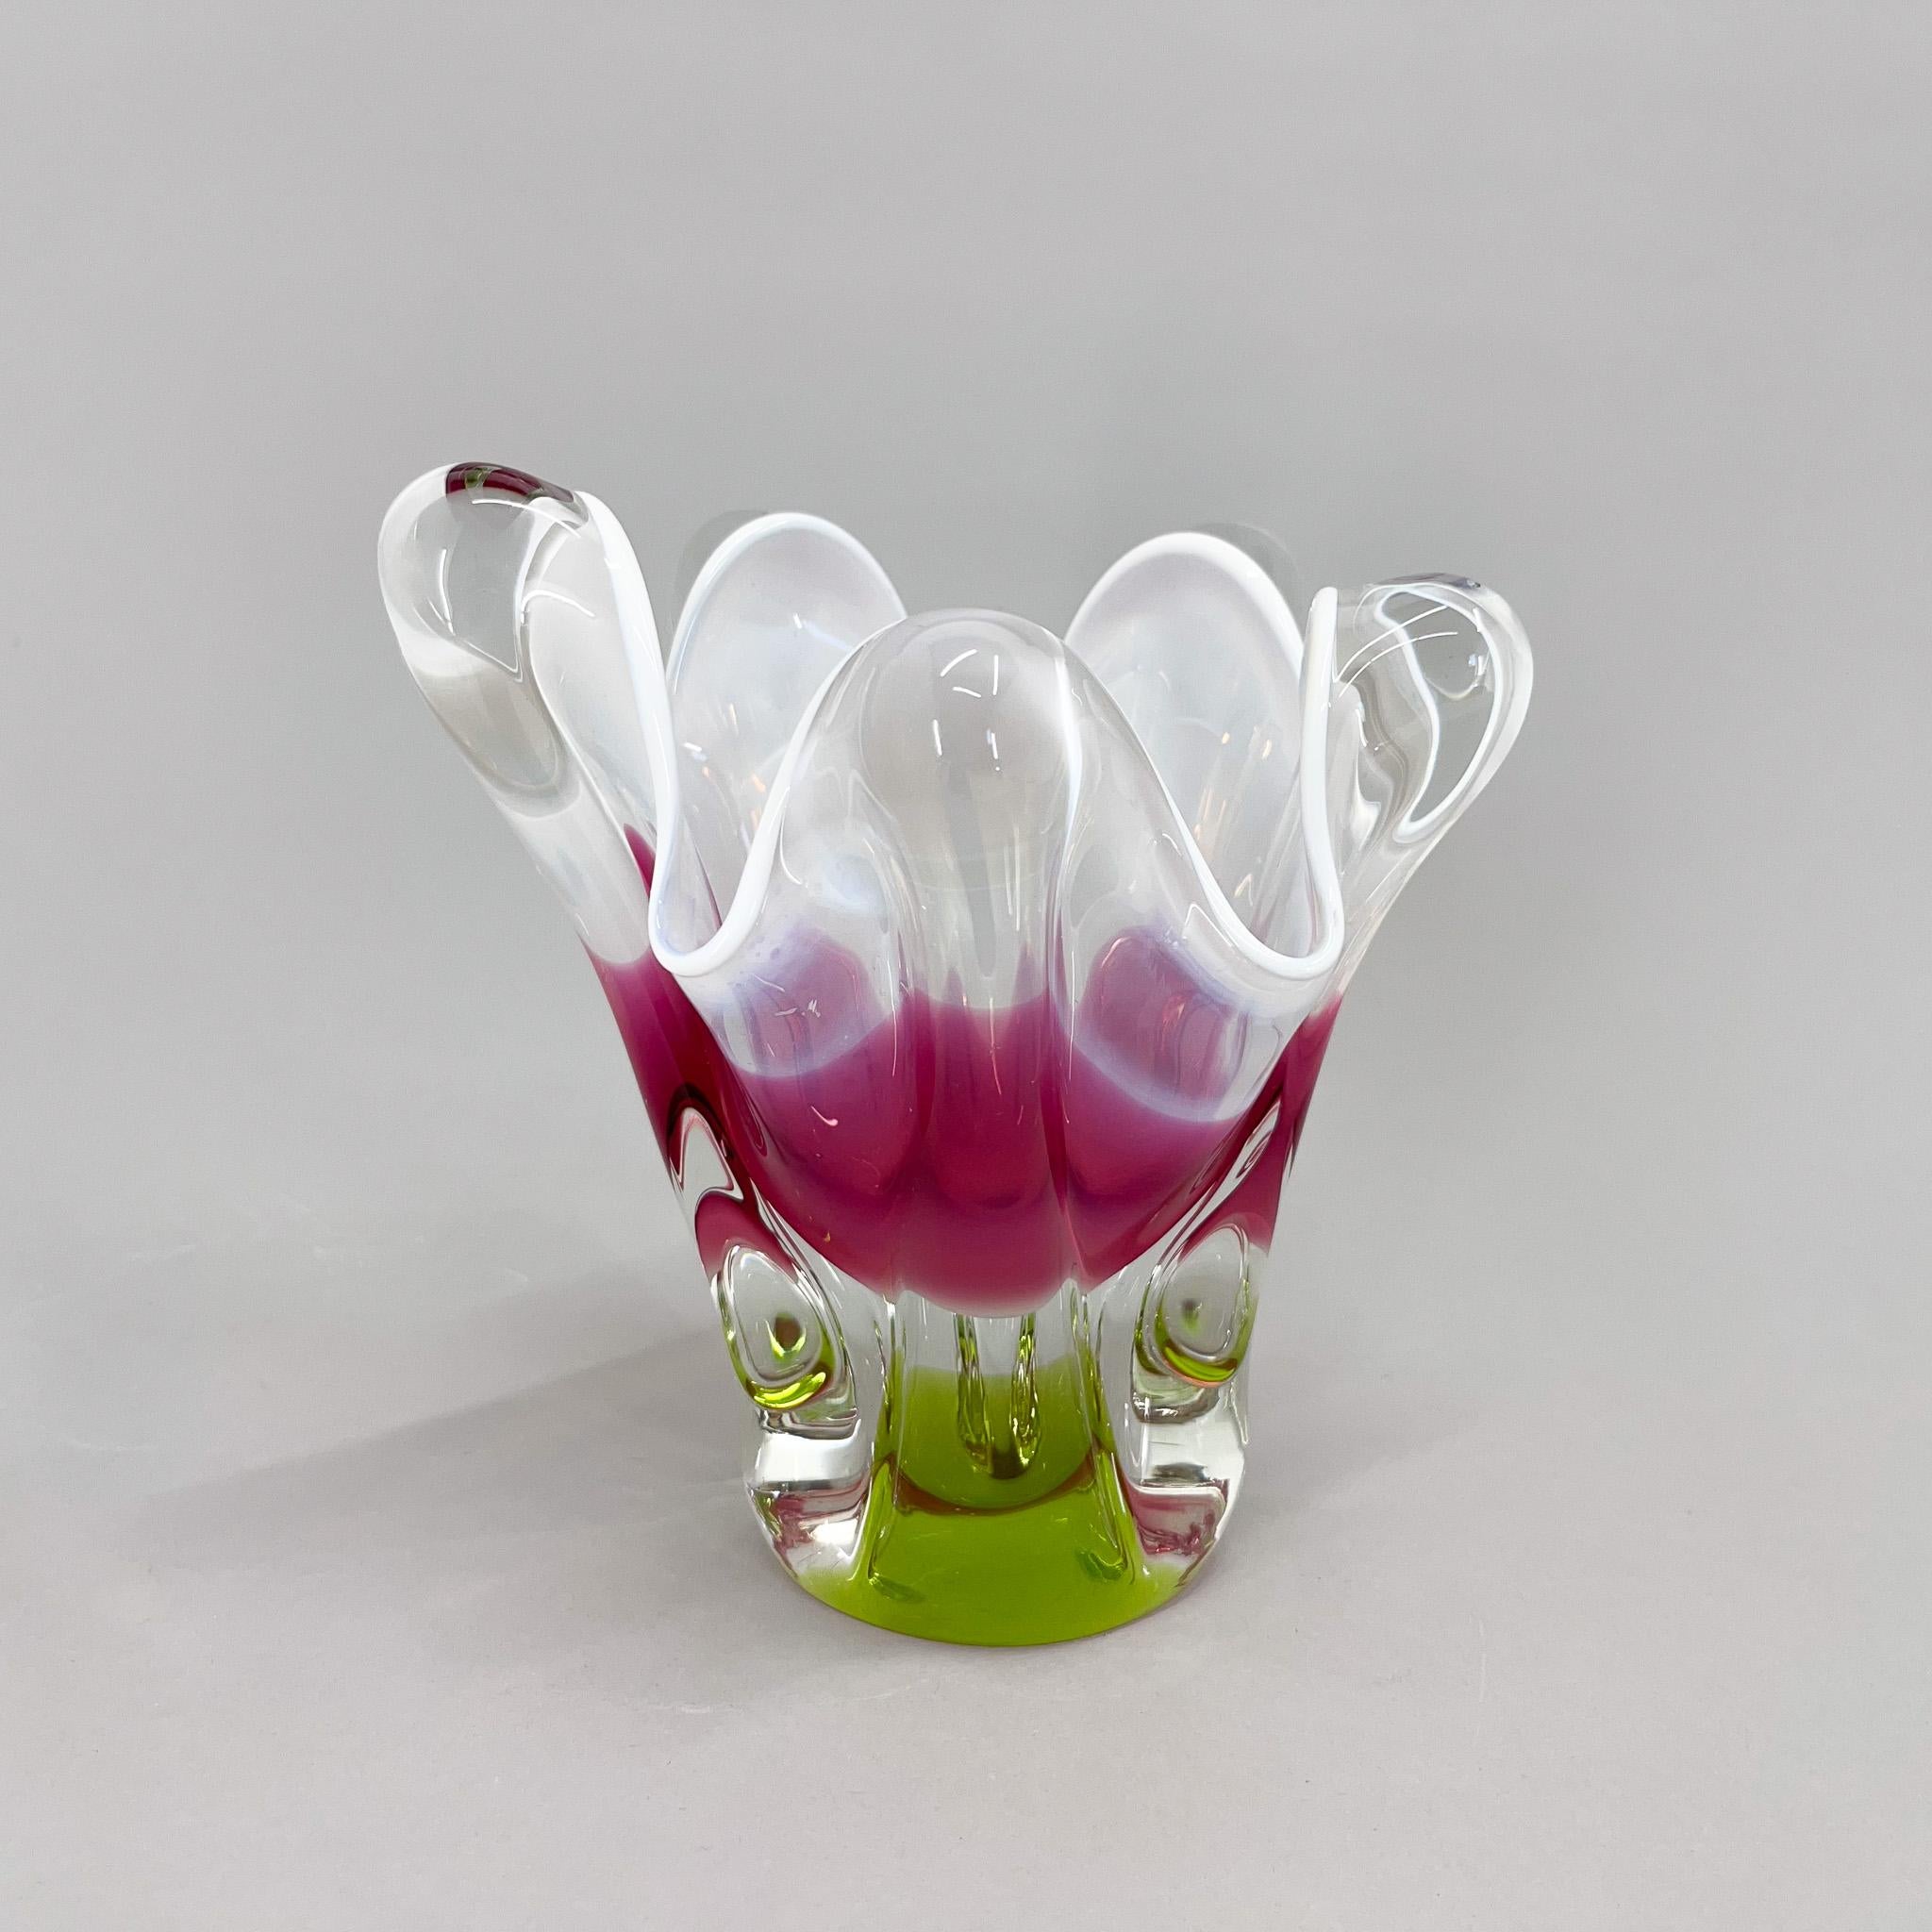 Mid-Century Modern Art Glass Vase by Josef Hospodka for Chribska Glassworks, 1960's For Sale